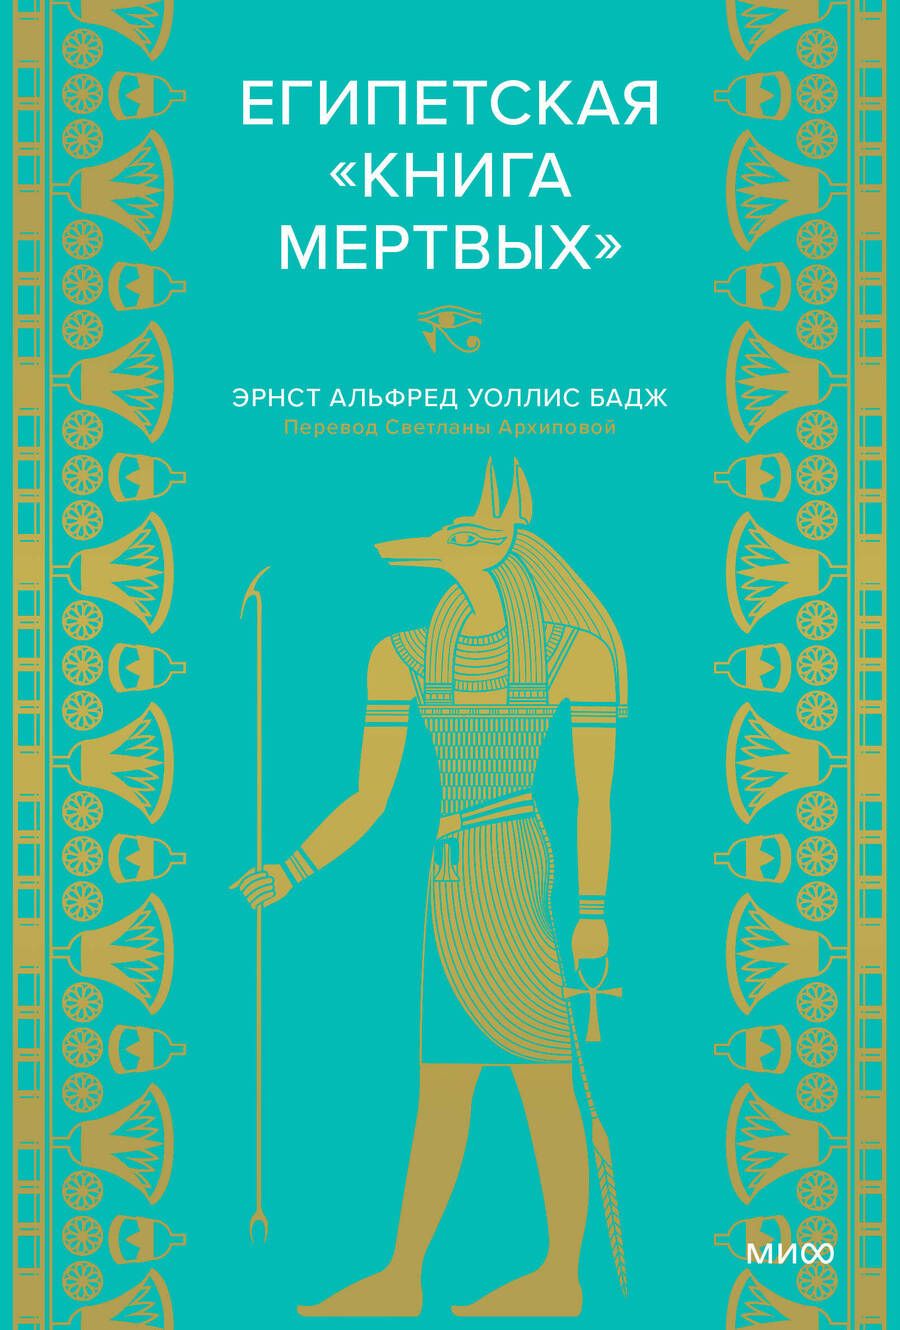 Обложка книги "Бадж: Египетская книга мертвых"